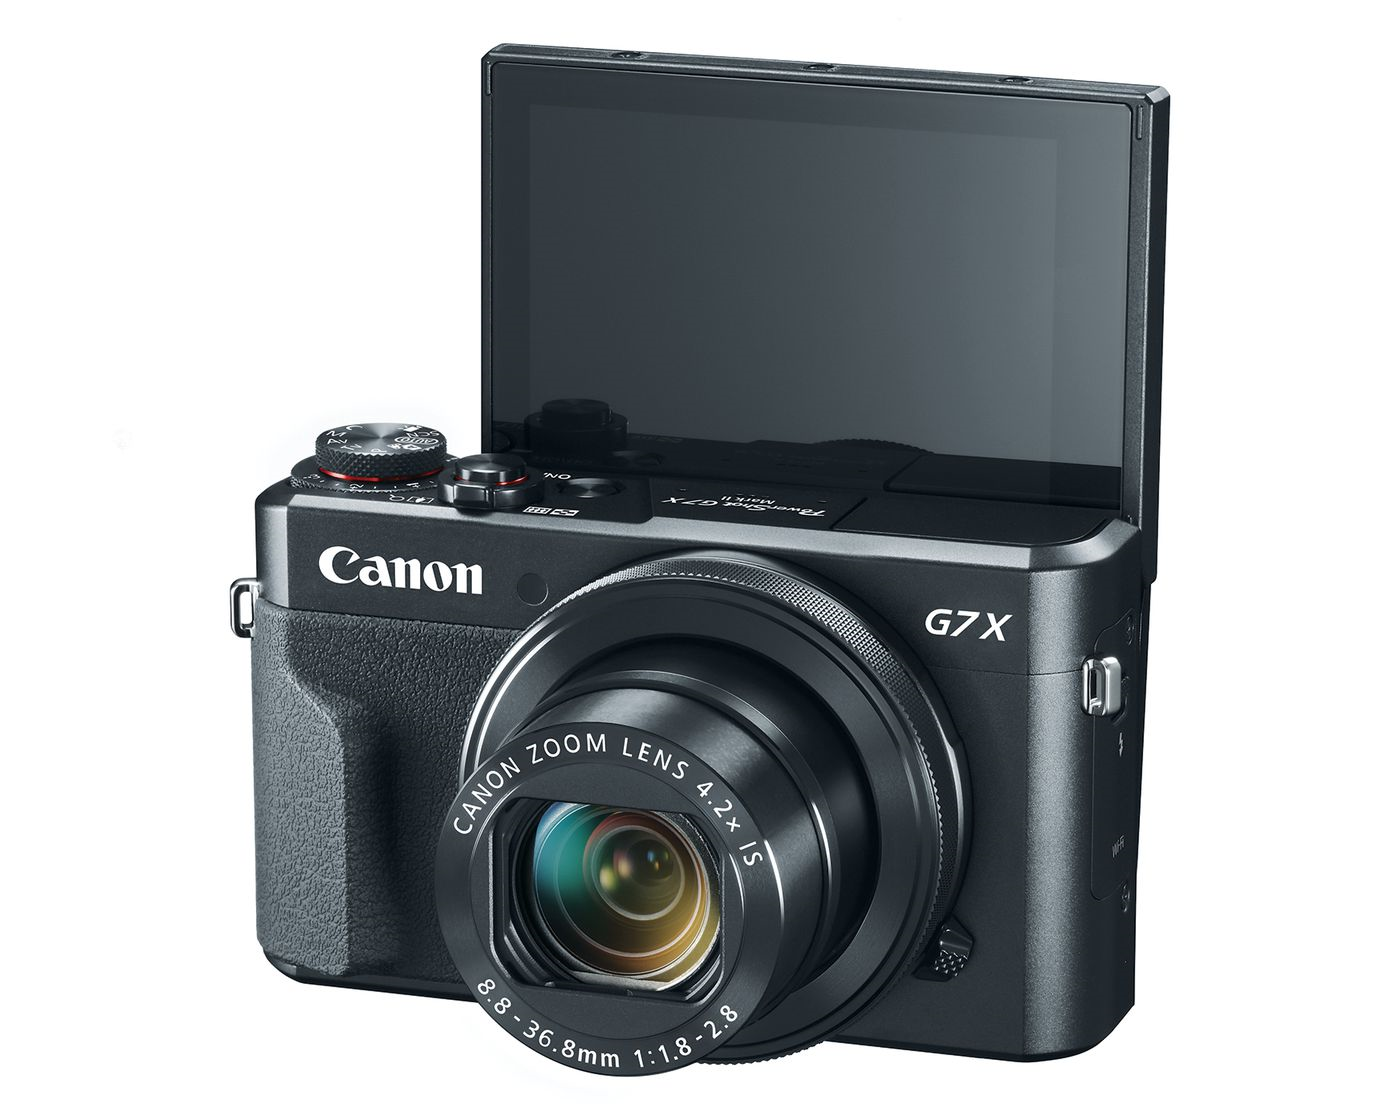 Canon Powershot G7x Mark II, showing its flip-up viewscreen